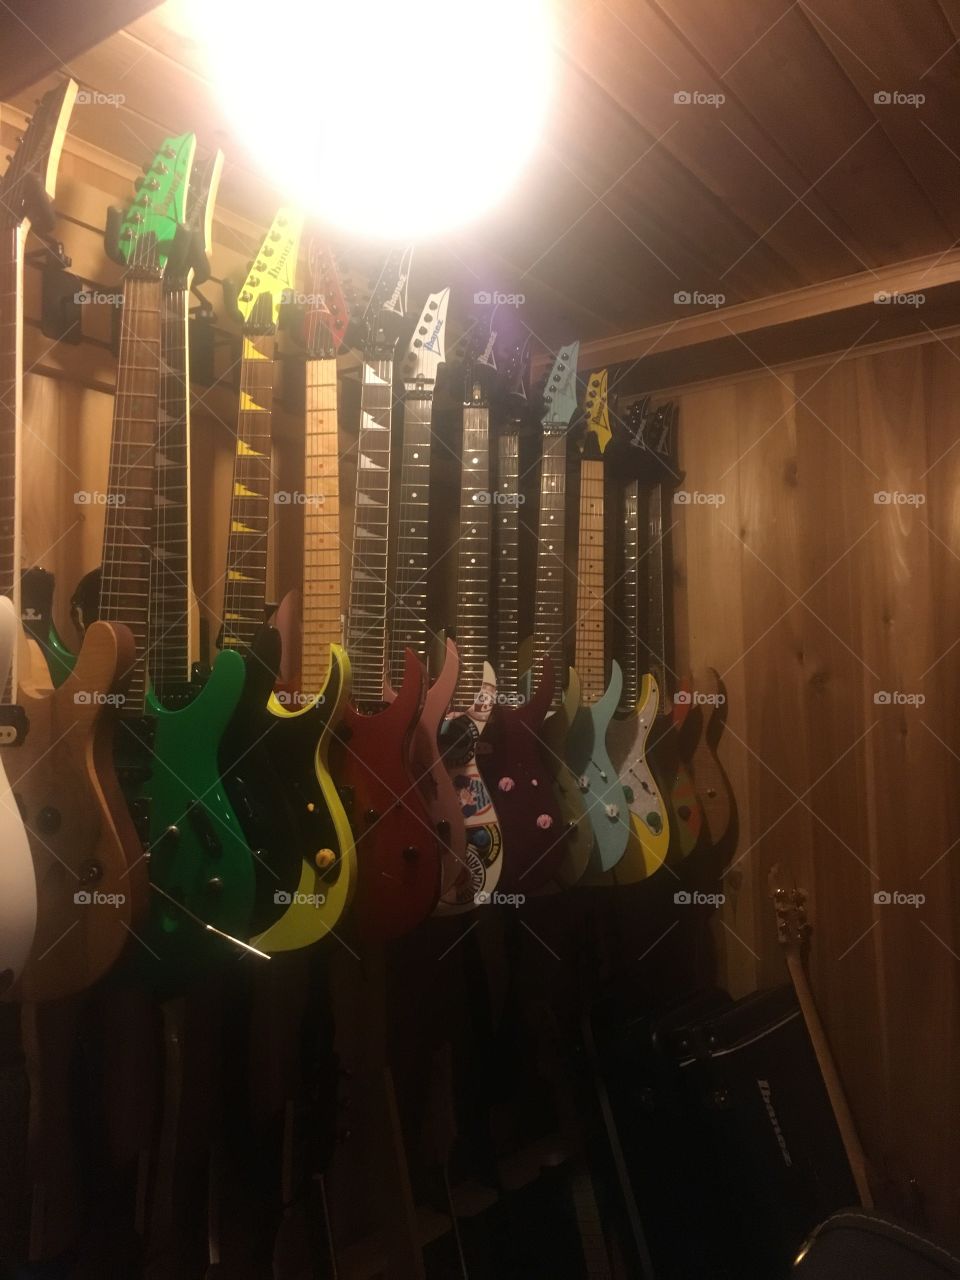 Aaron’s guitar room